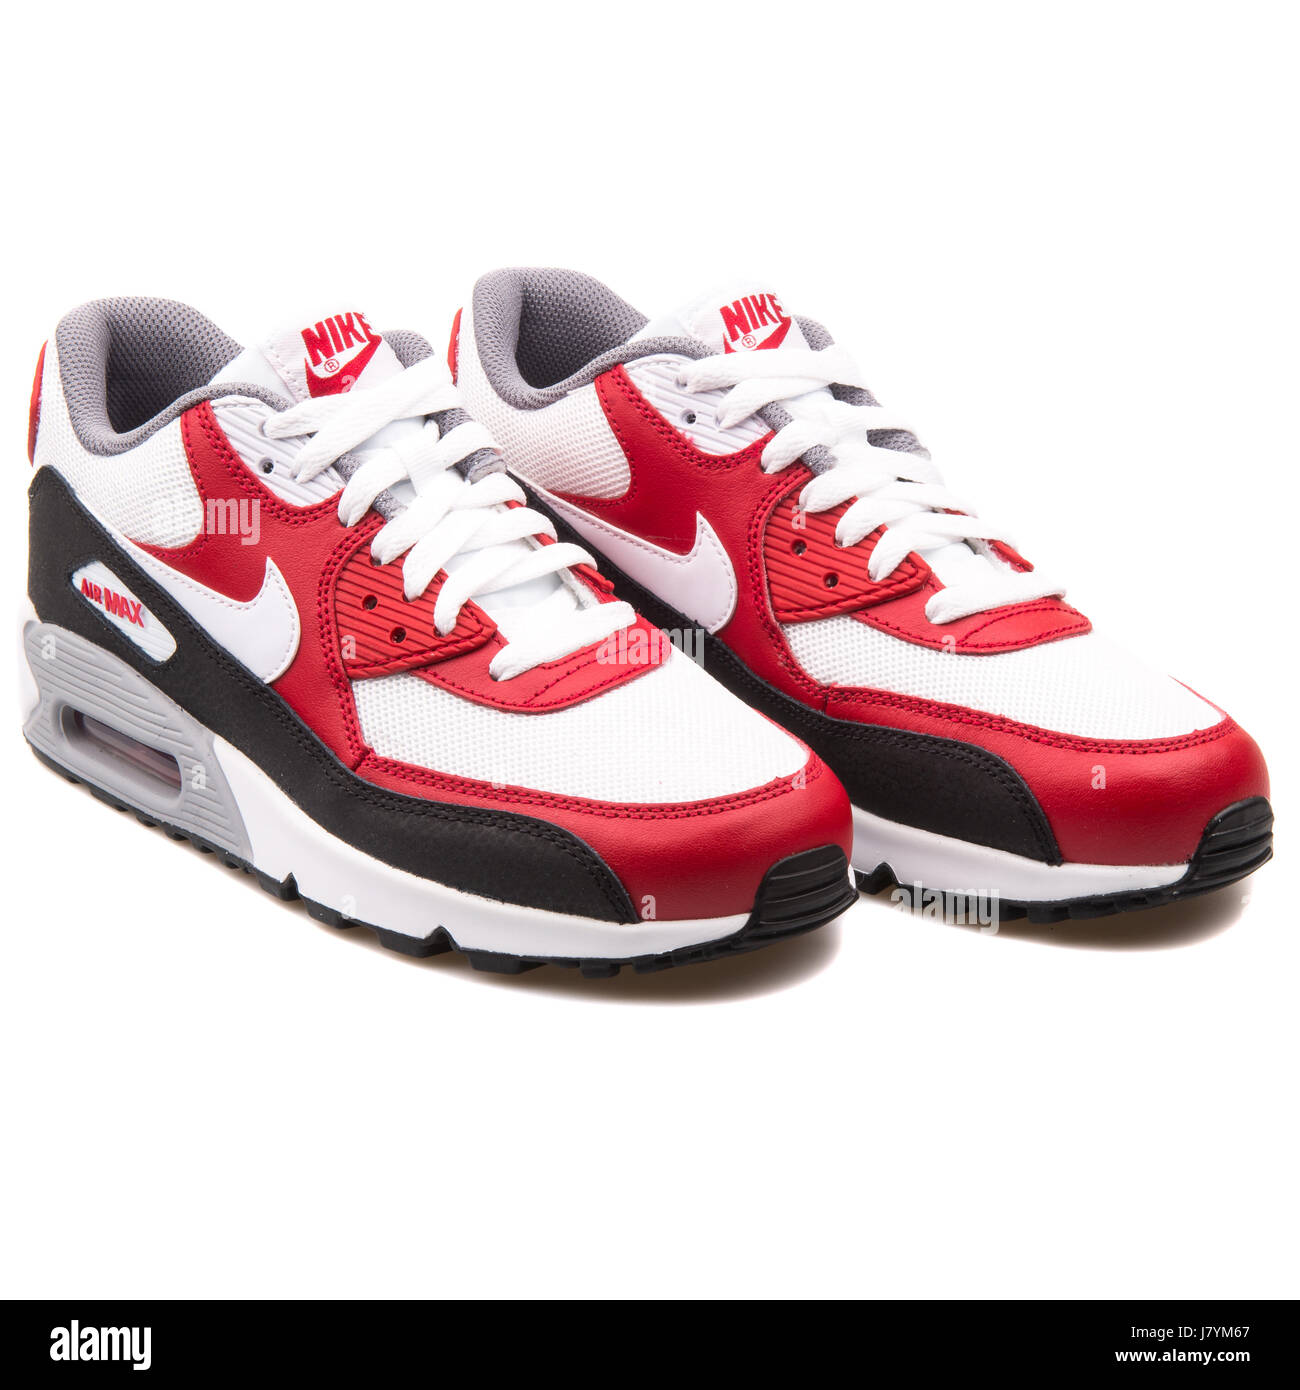 Nike Air Max 90 Mesh (GS) rot weiß und schwarz Jugend Sport-Sneaker -  724824-102 Stockfotografie - Alamy